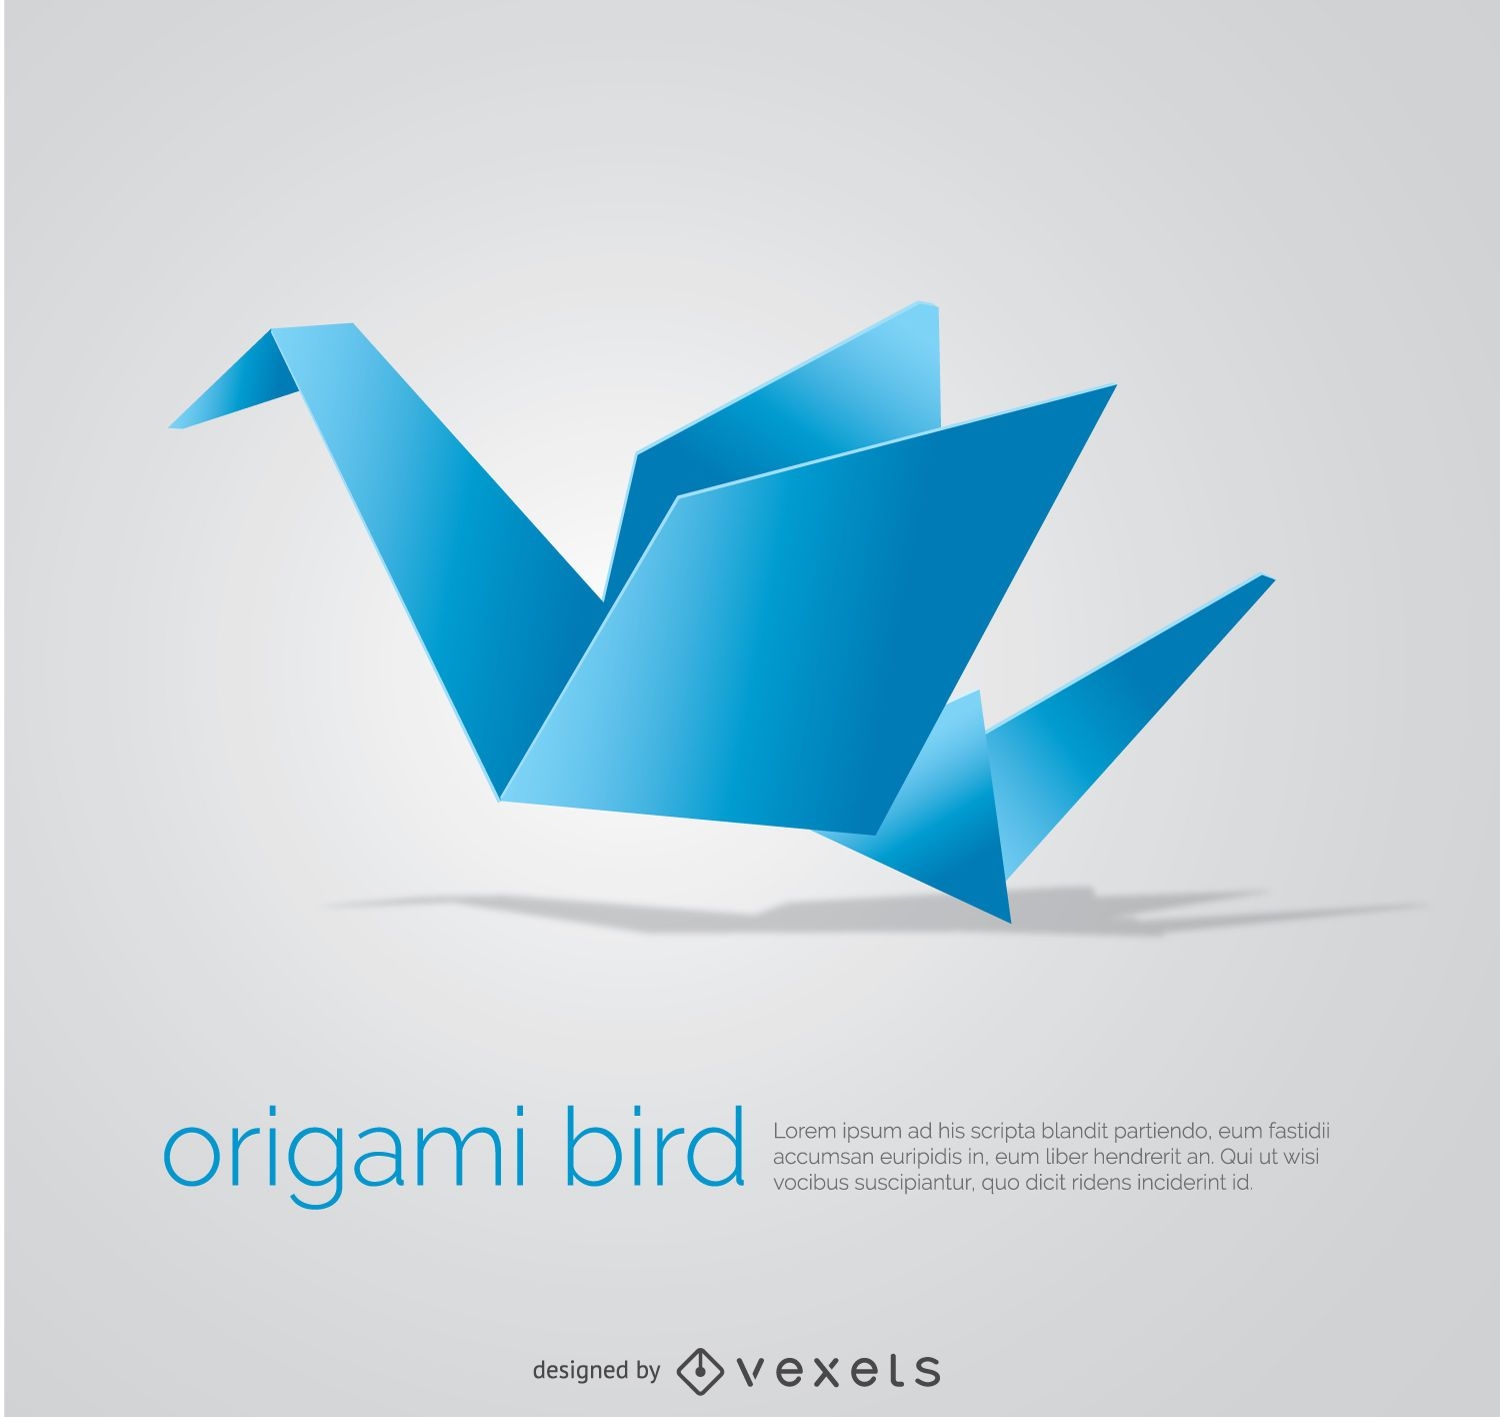 P?jaro de origami